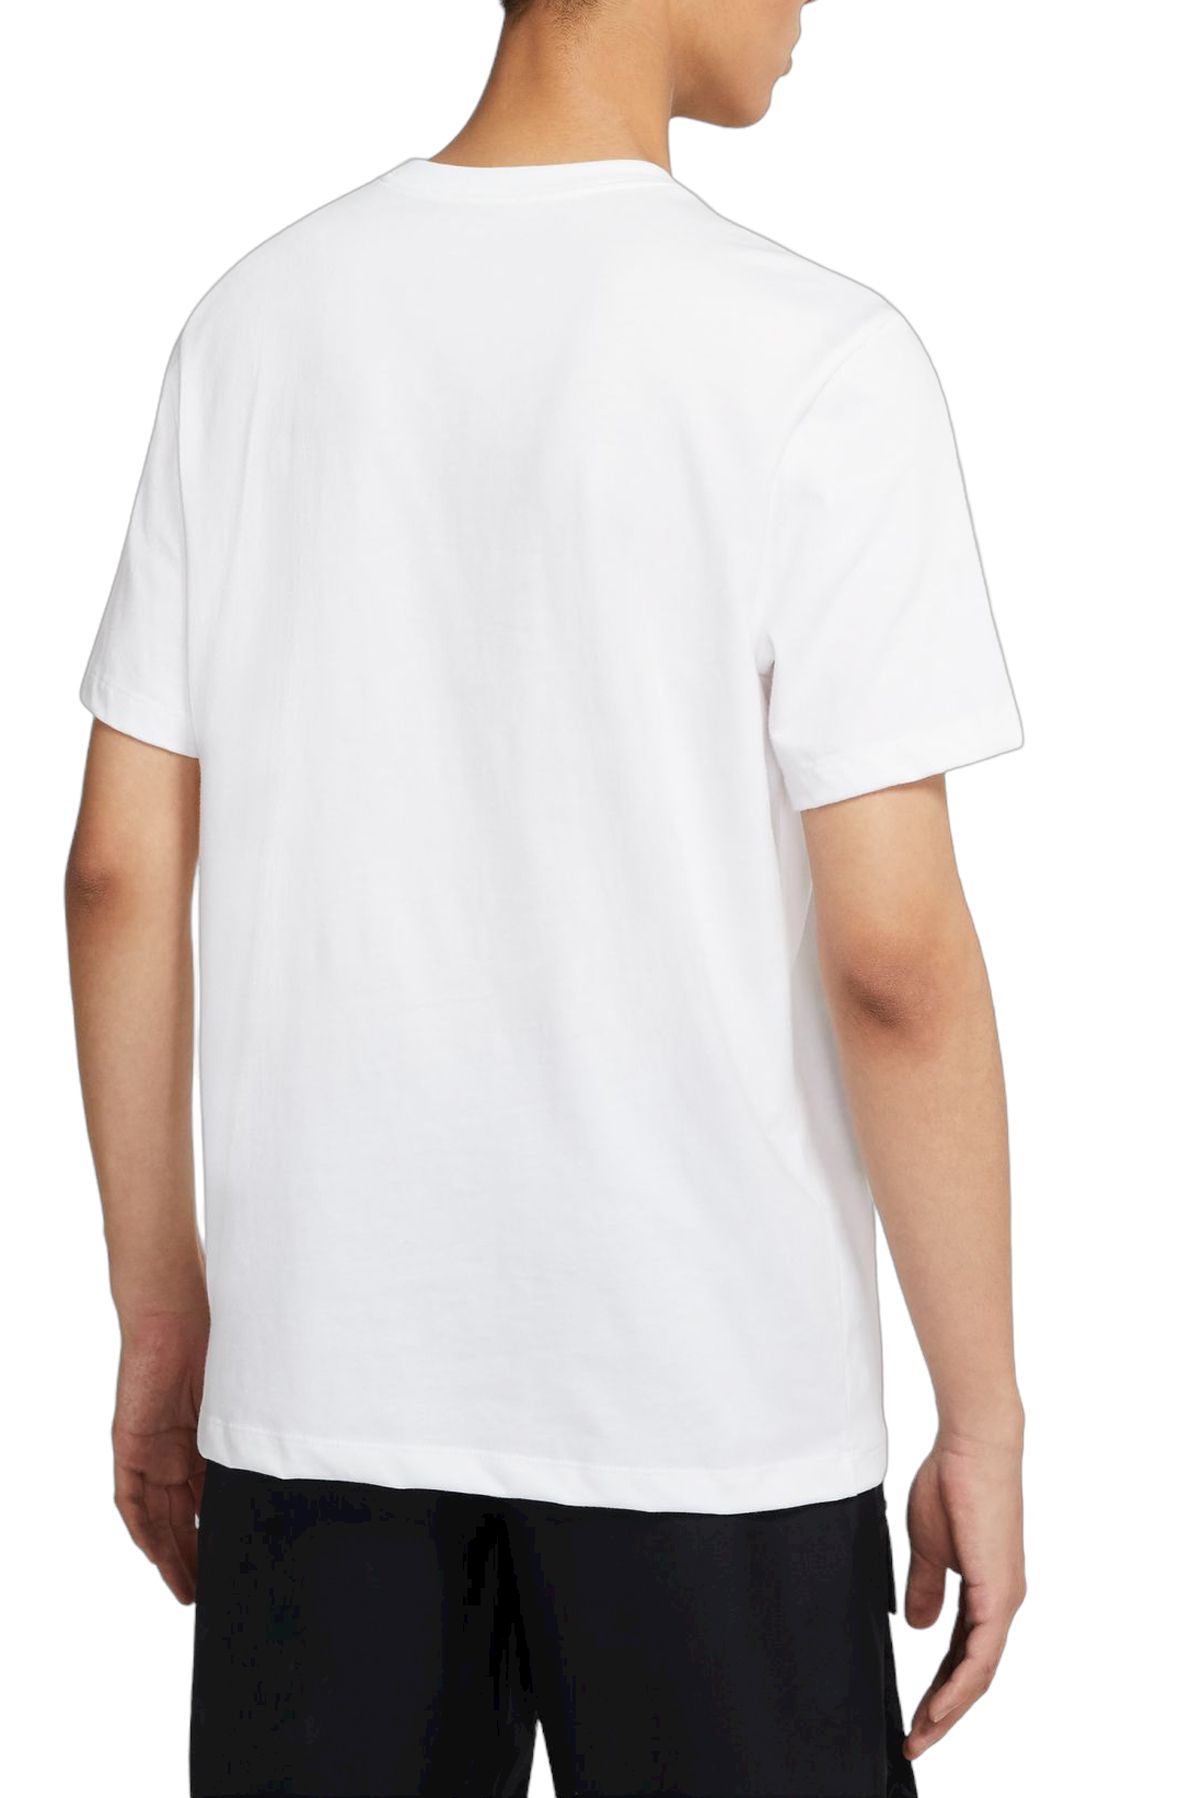 NIKE Sportswear Swoosh T-Shirt DC5094 100 - Shiekh